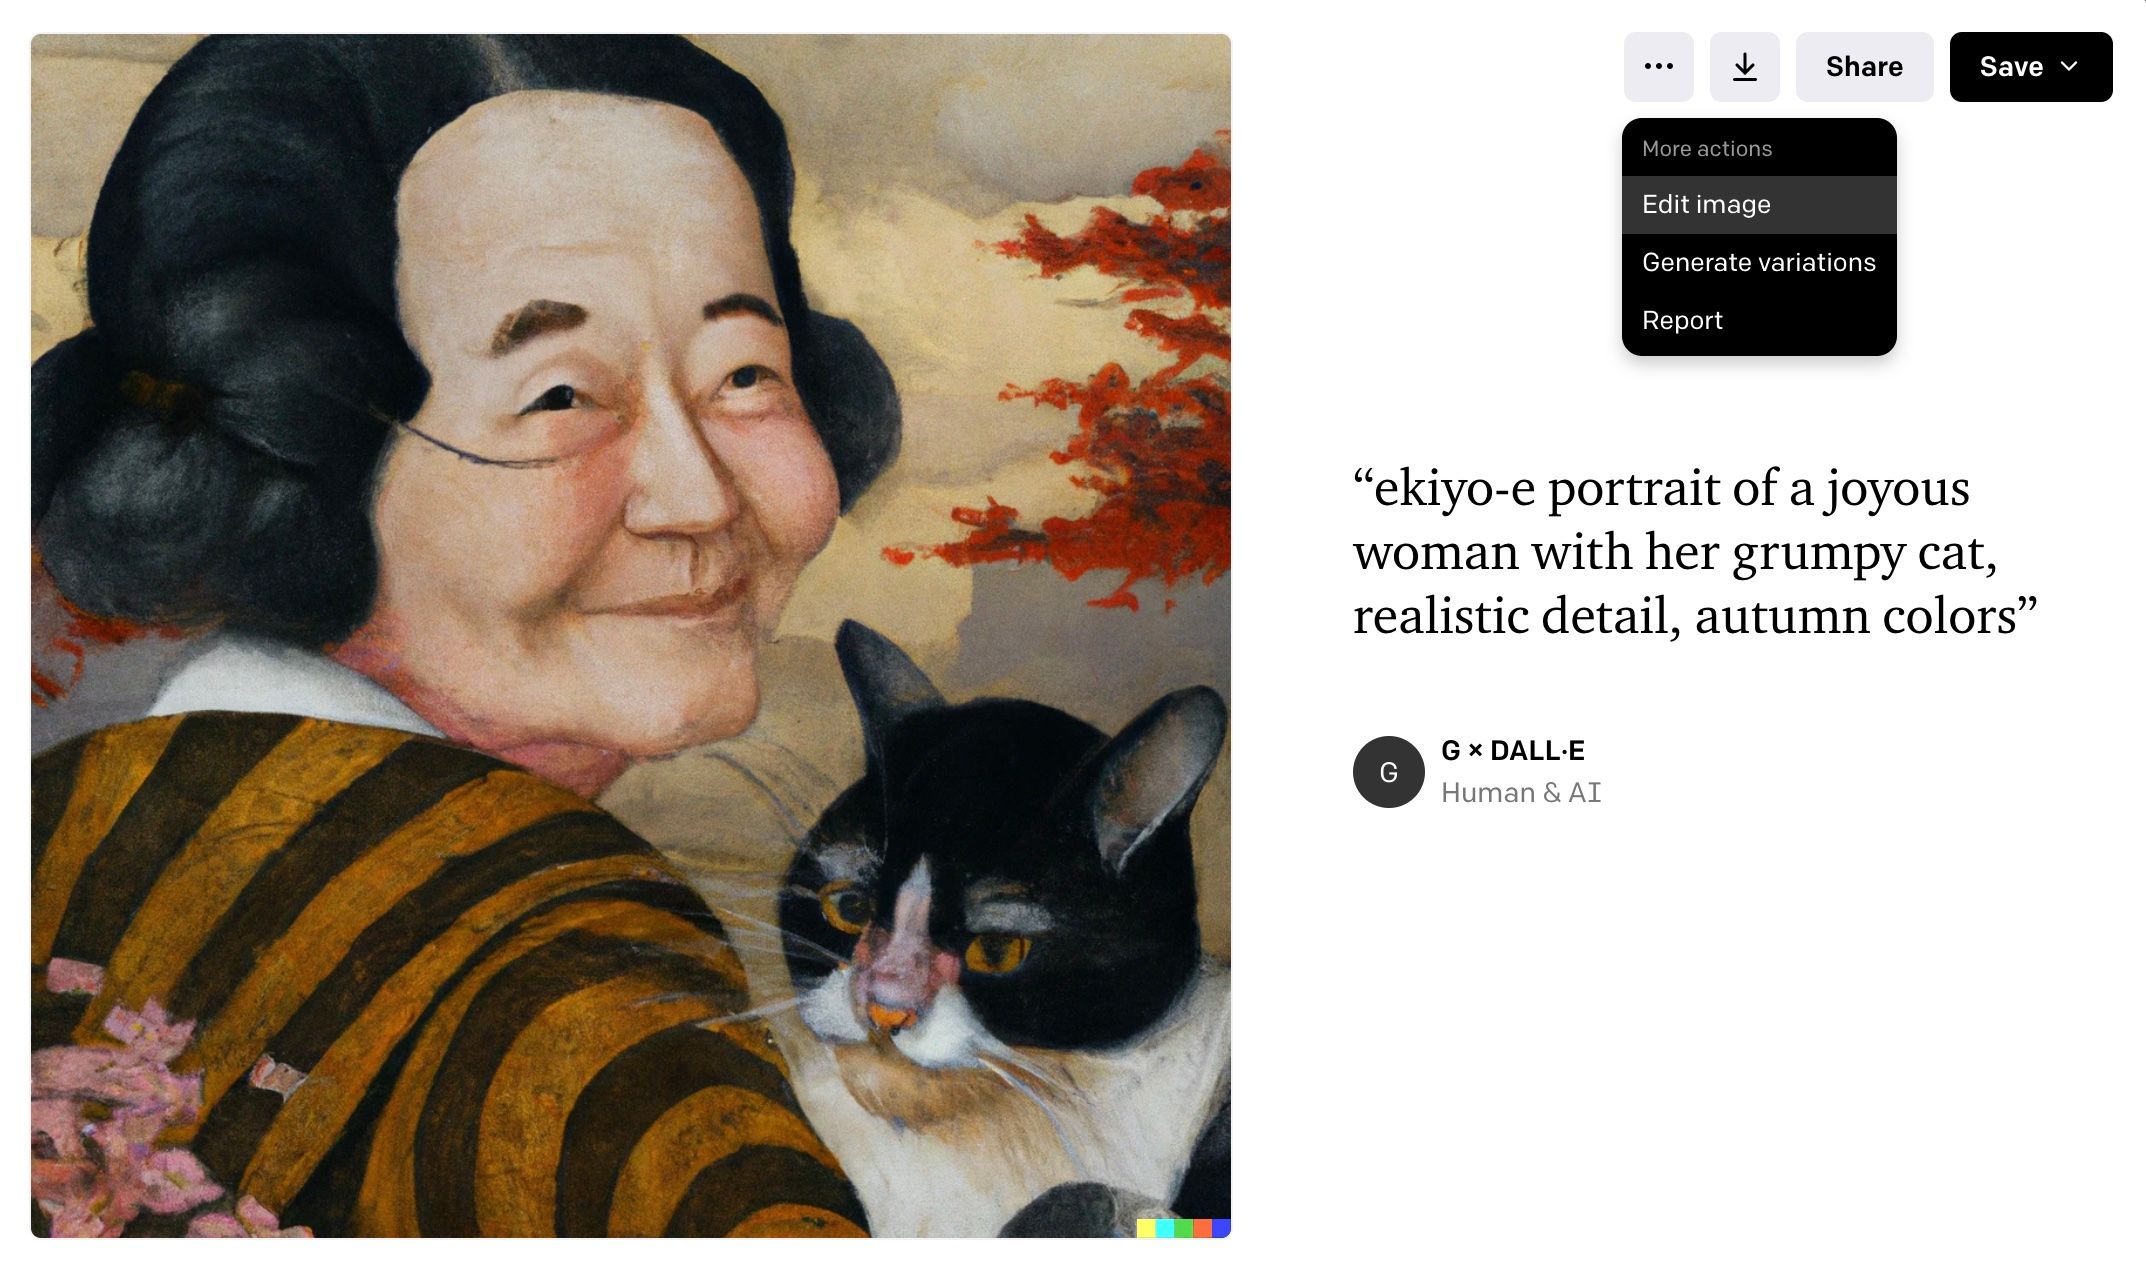 Une image d'une femme et d'un chat créée avec Dall E, options pour modifier l'image affichée à droite